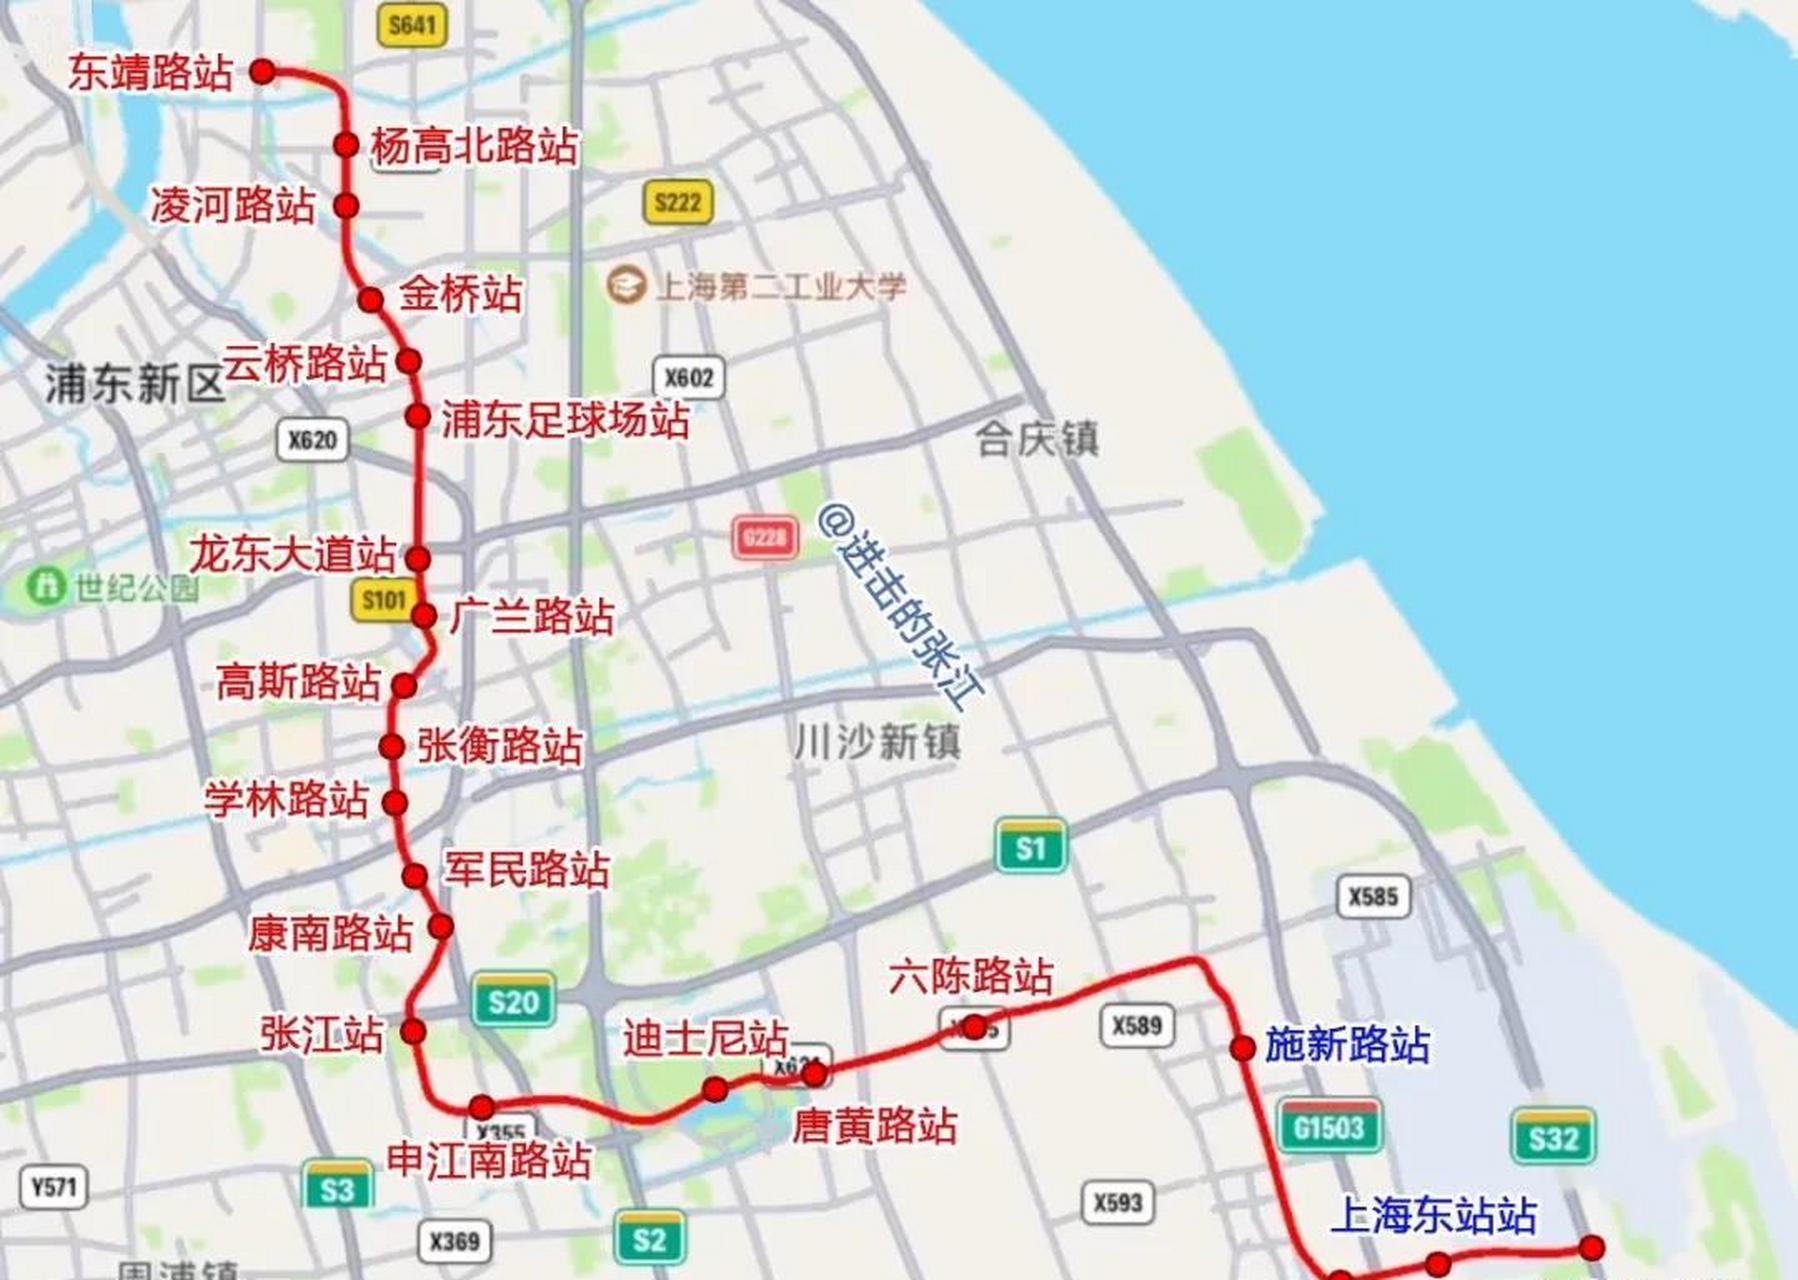 近日,由上海建工集团股份有限公司承建21号线一期东延伸工程上海东站